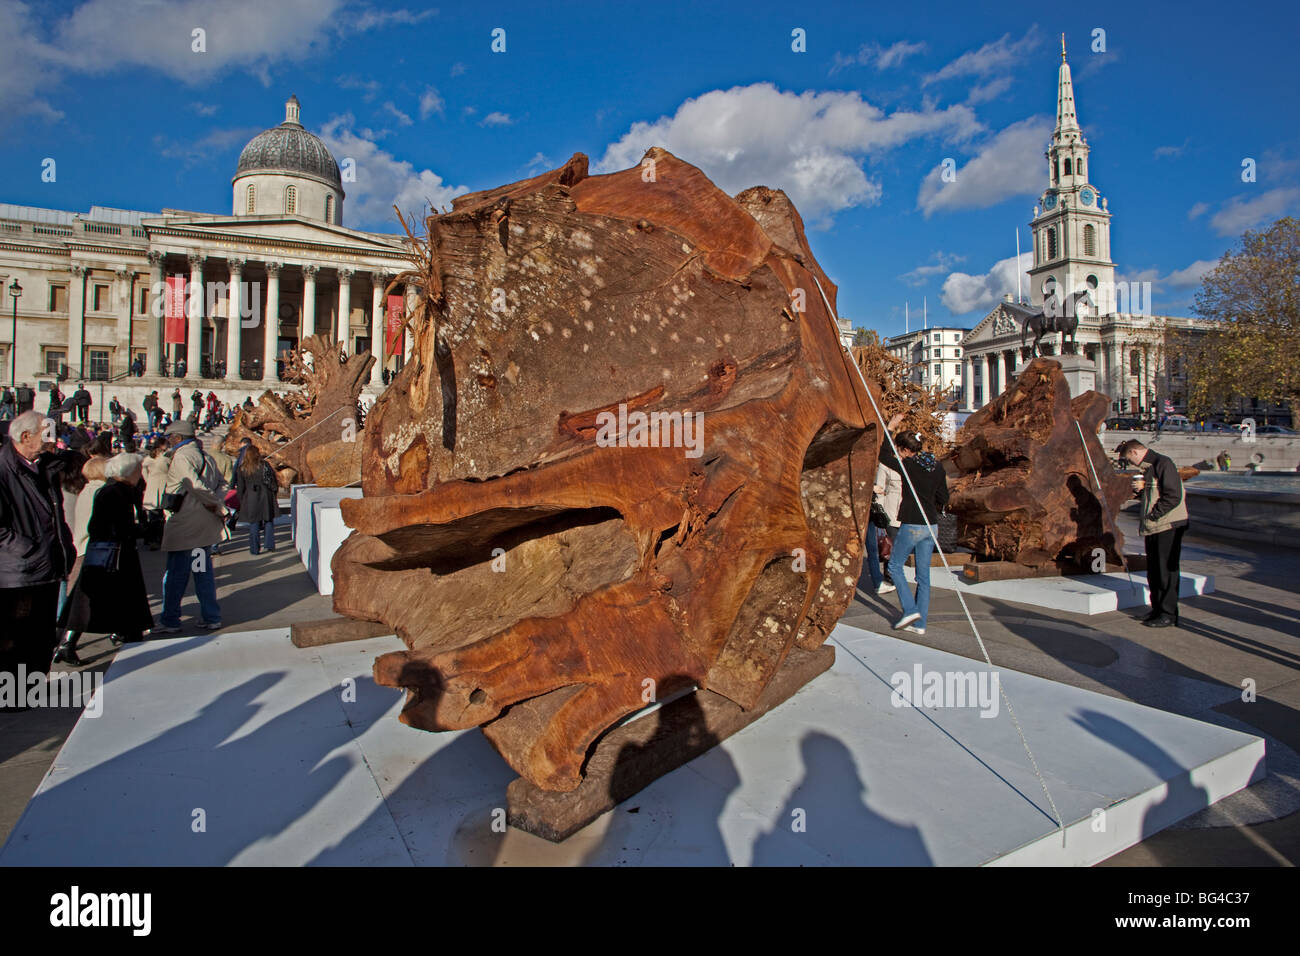 London; Trafalgar Square; Kunstinstallation "Gespensterwald"; November 2OO9 Stockfoto